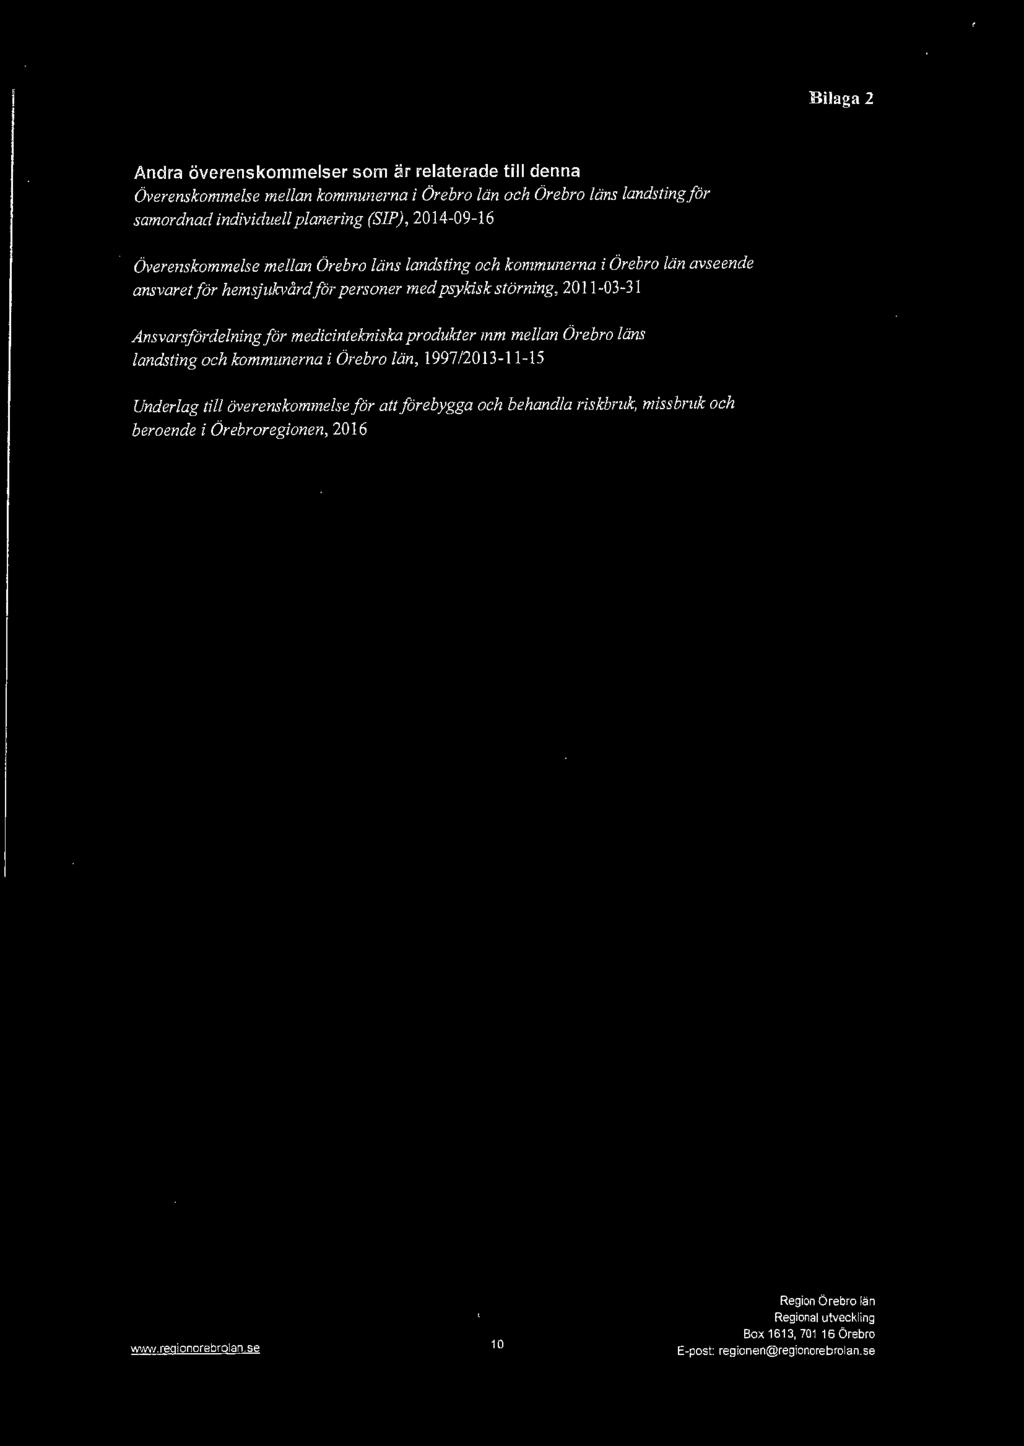 personer med psykisk störning, 2011-03-31 Ansvarsfördelning för medicintekniska produkter mm mellan Örebro läns landsting och kommunerna i Örebro län,